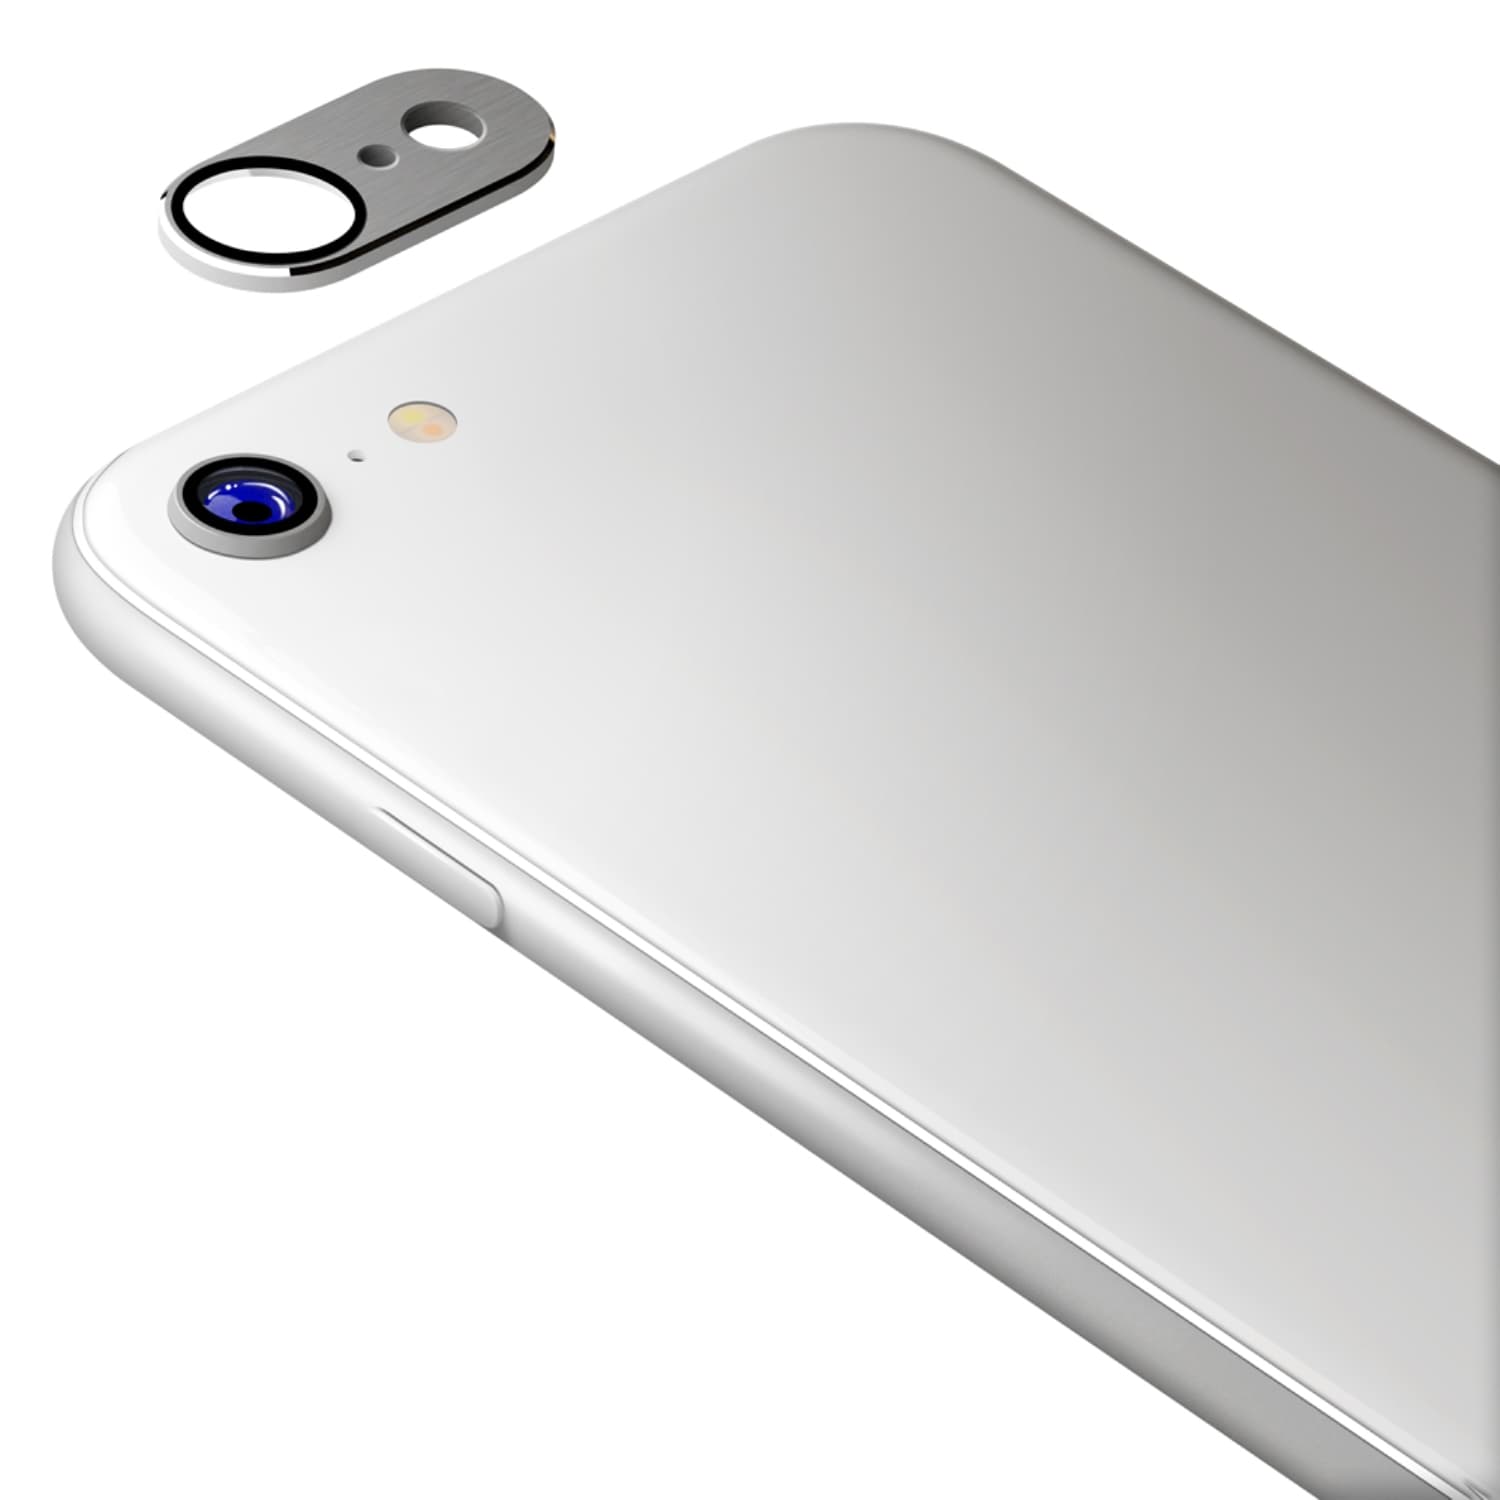 アップル iPhoneSE 第2世代 64GB ホワイト ケース・シール付